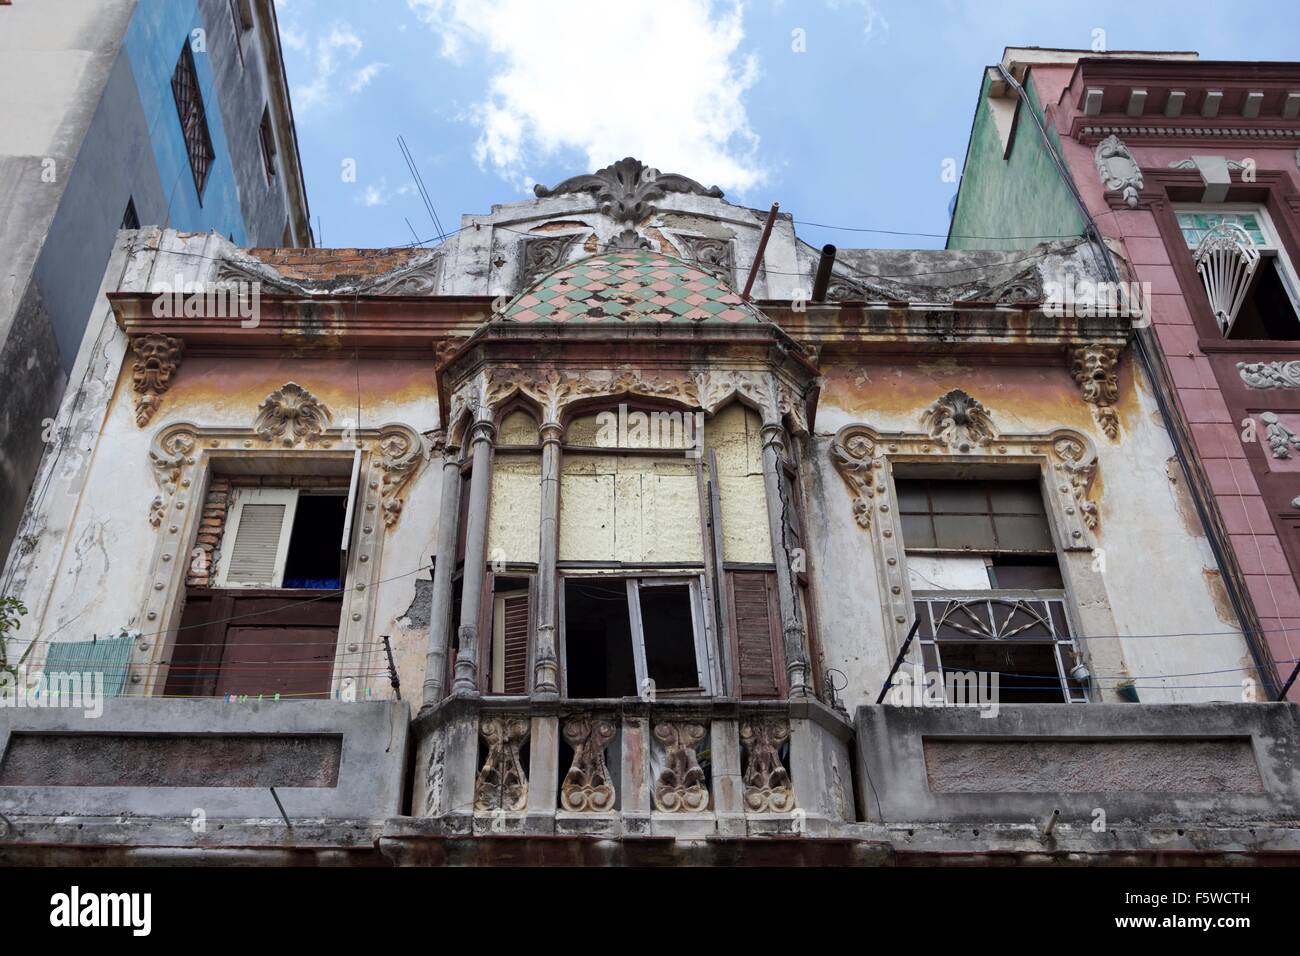 Façade colorée d'une maison de style colonial dans la vieille ville de La Havane, Cuba. Banque D'Images